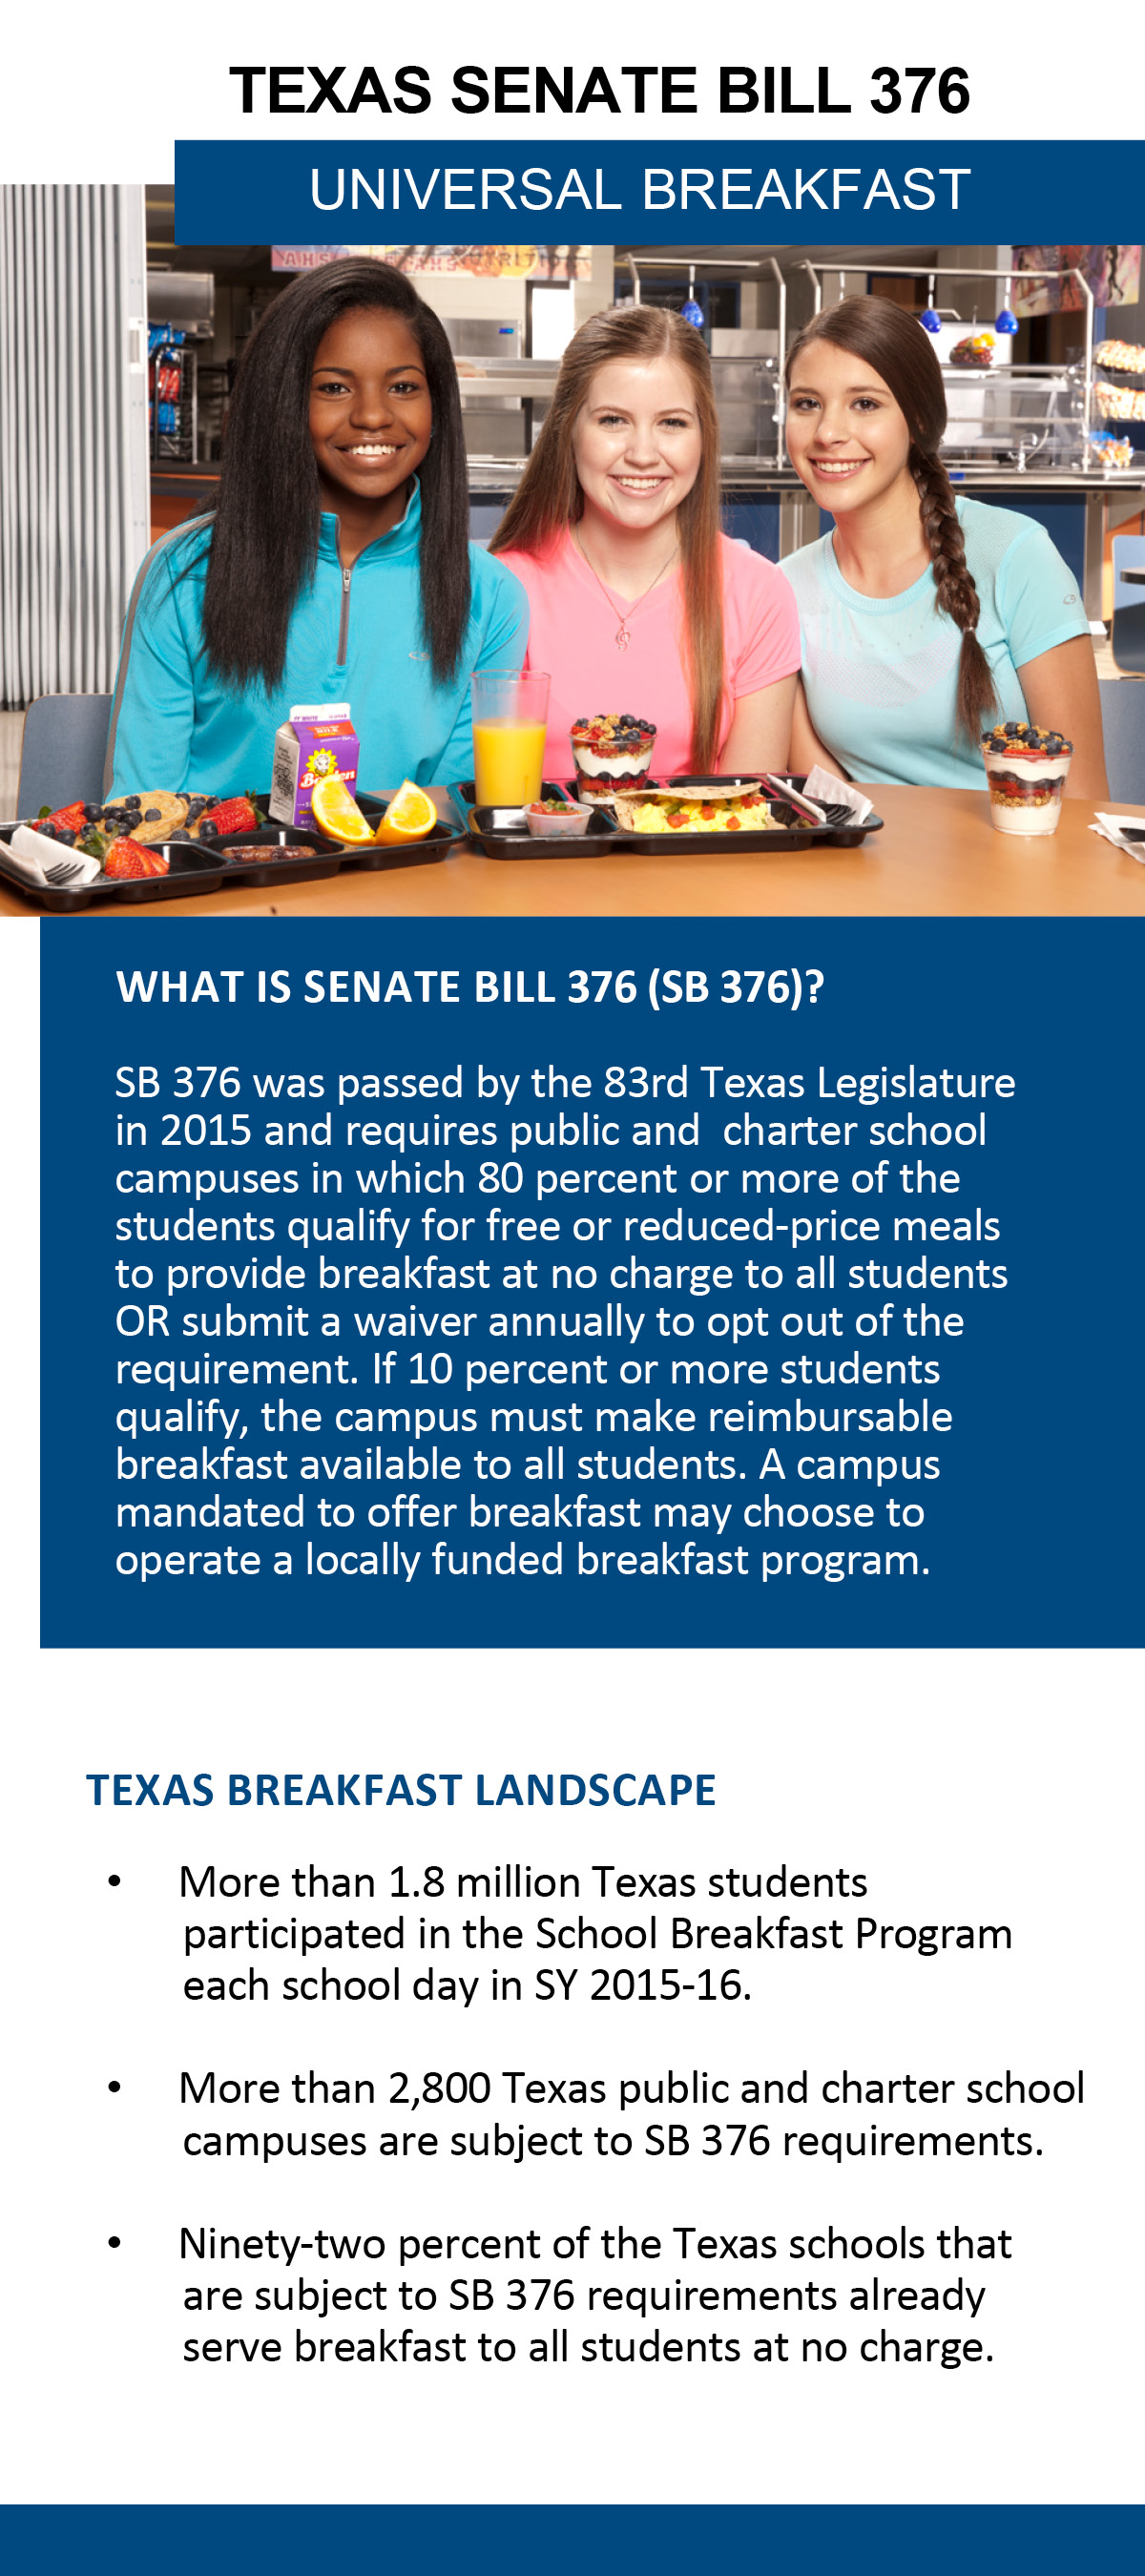 Universal Breakfast Texas Senate Bill 376